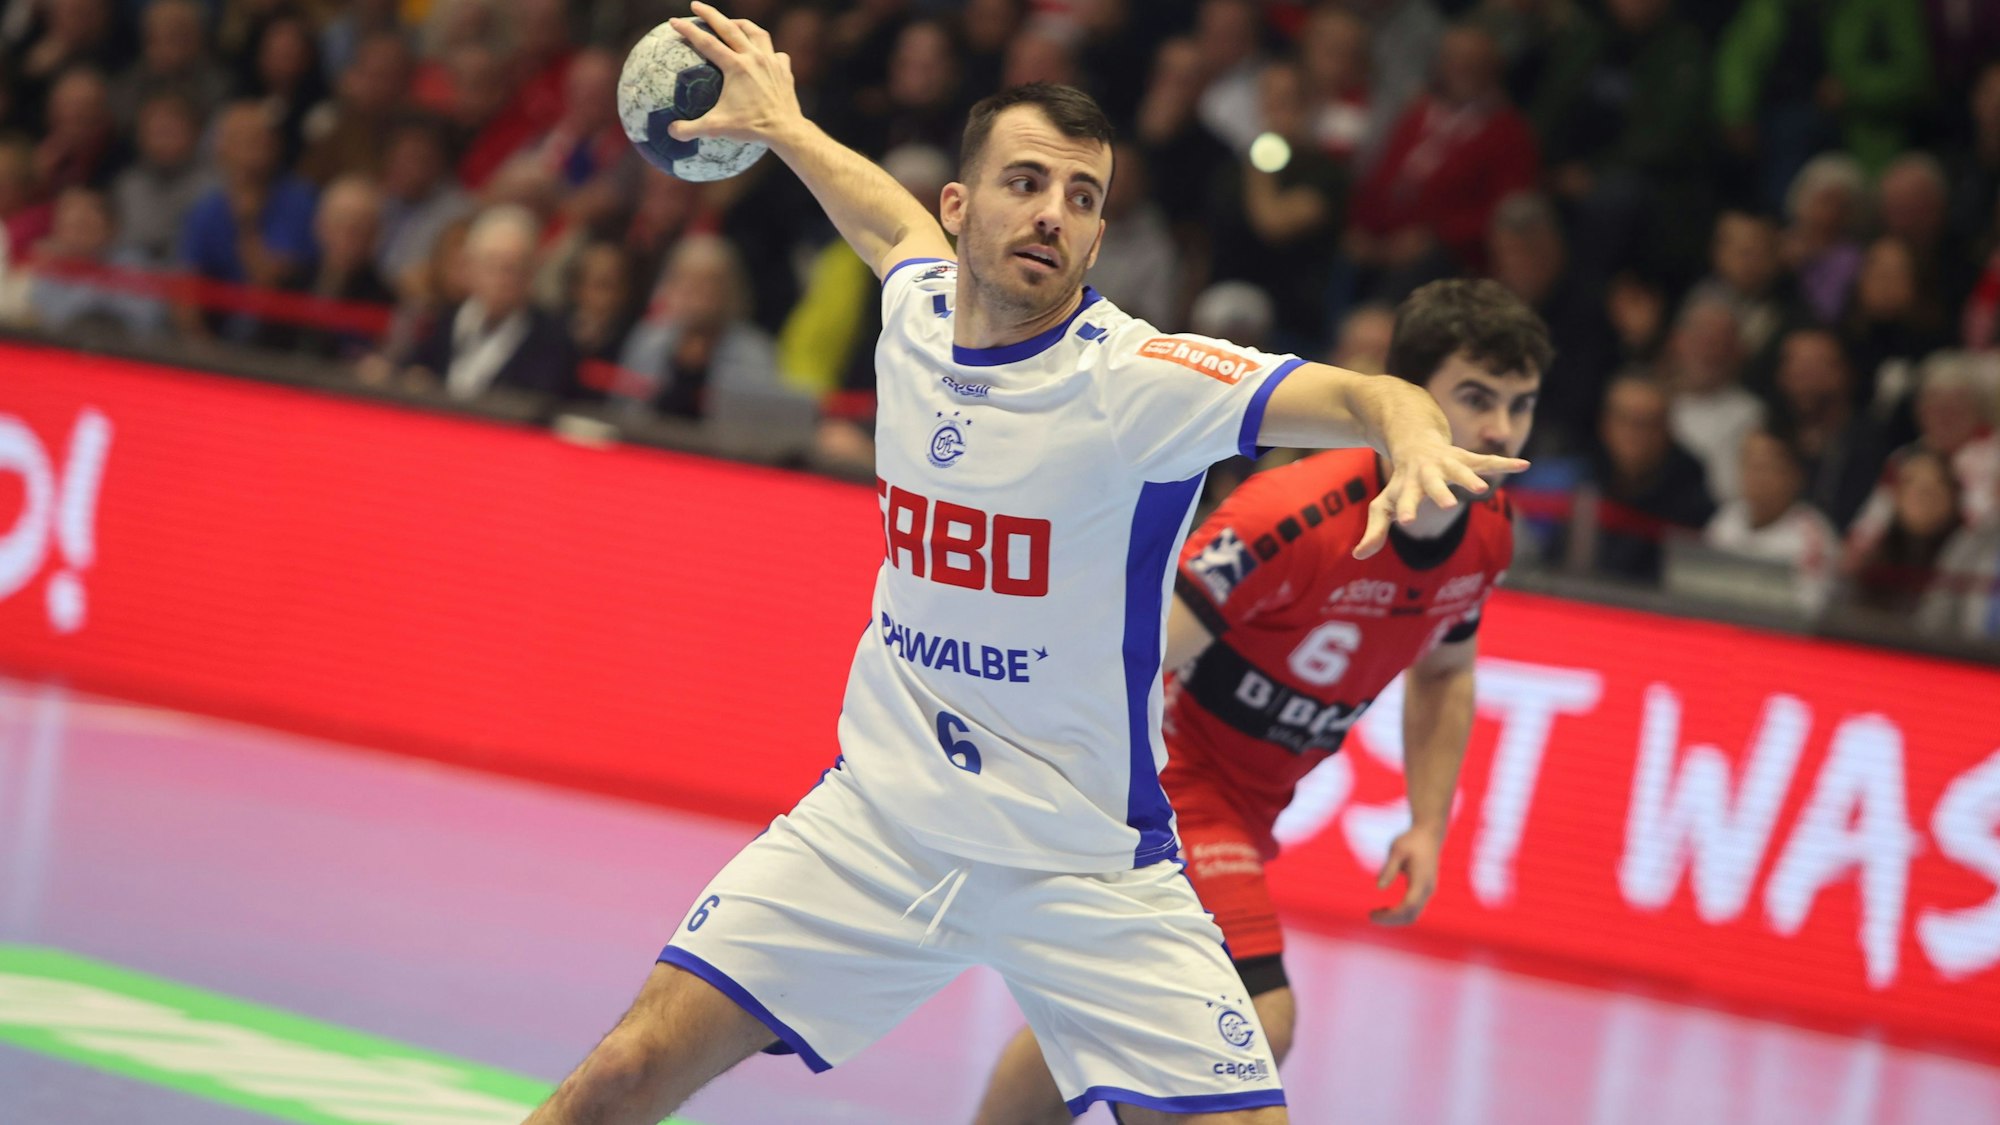 VfL-Handballer Milos Vujovic beim Siebenmeter.